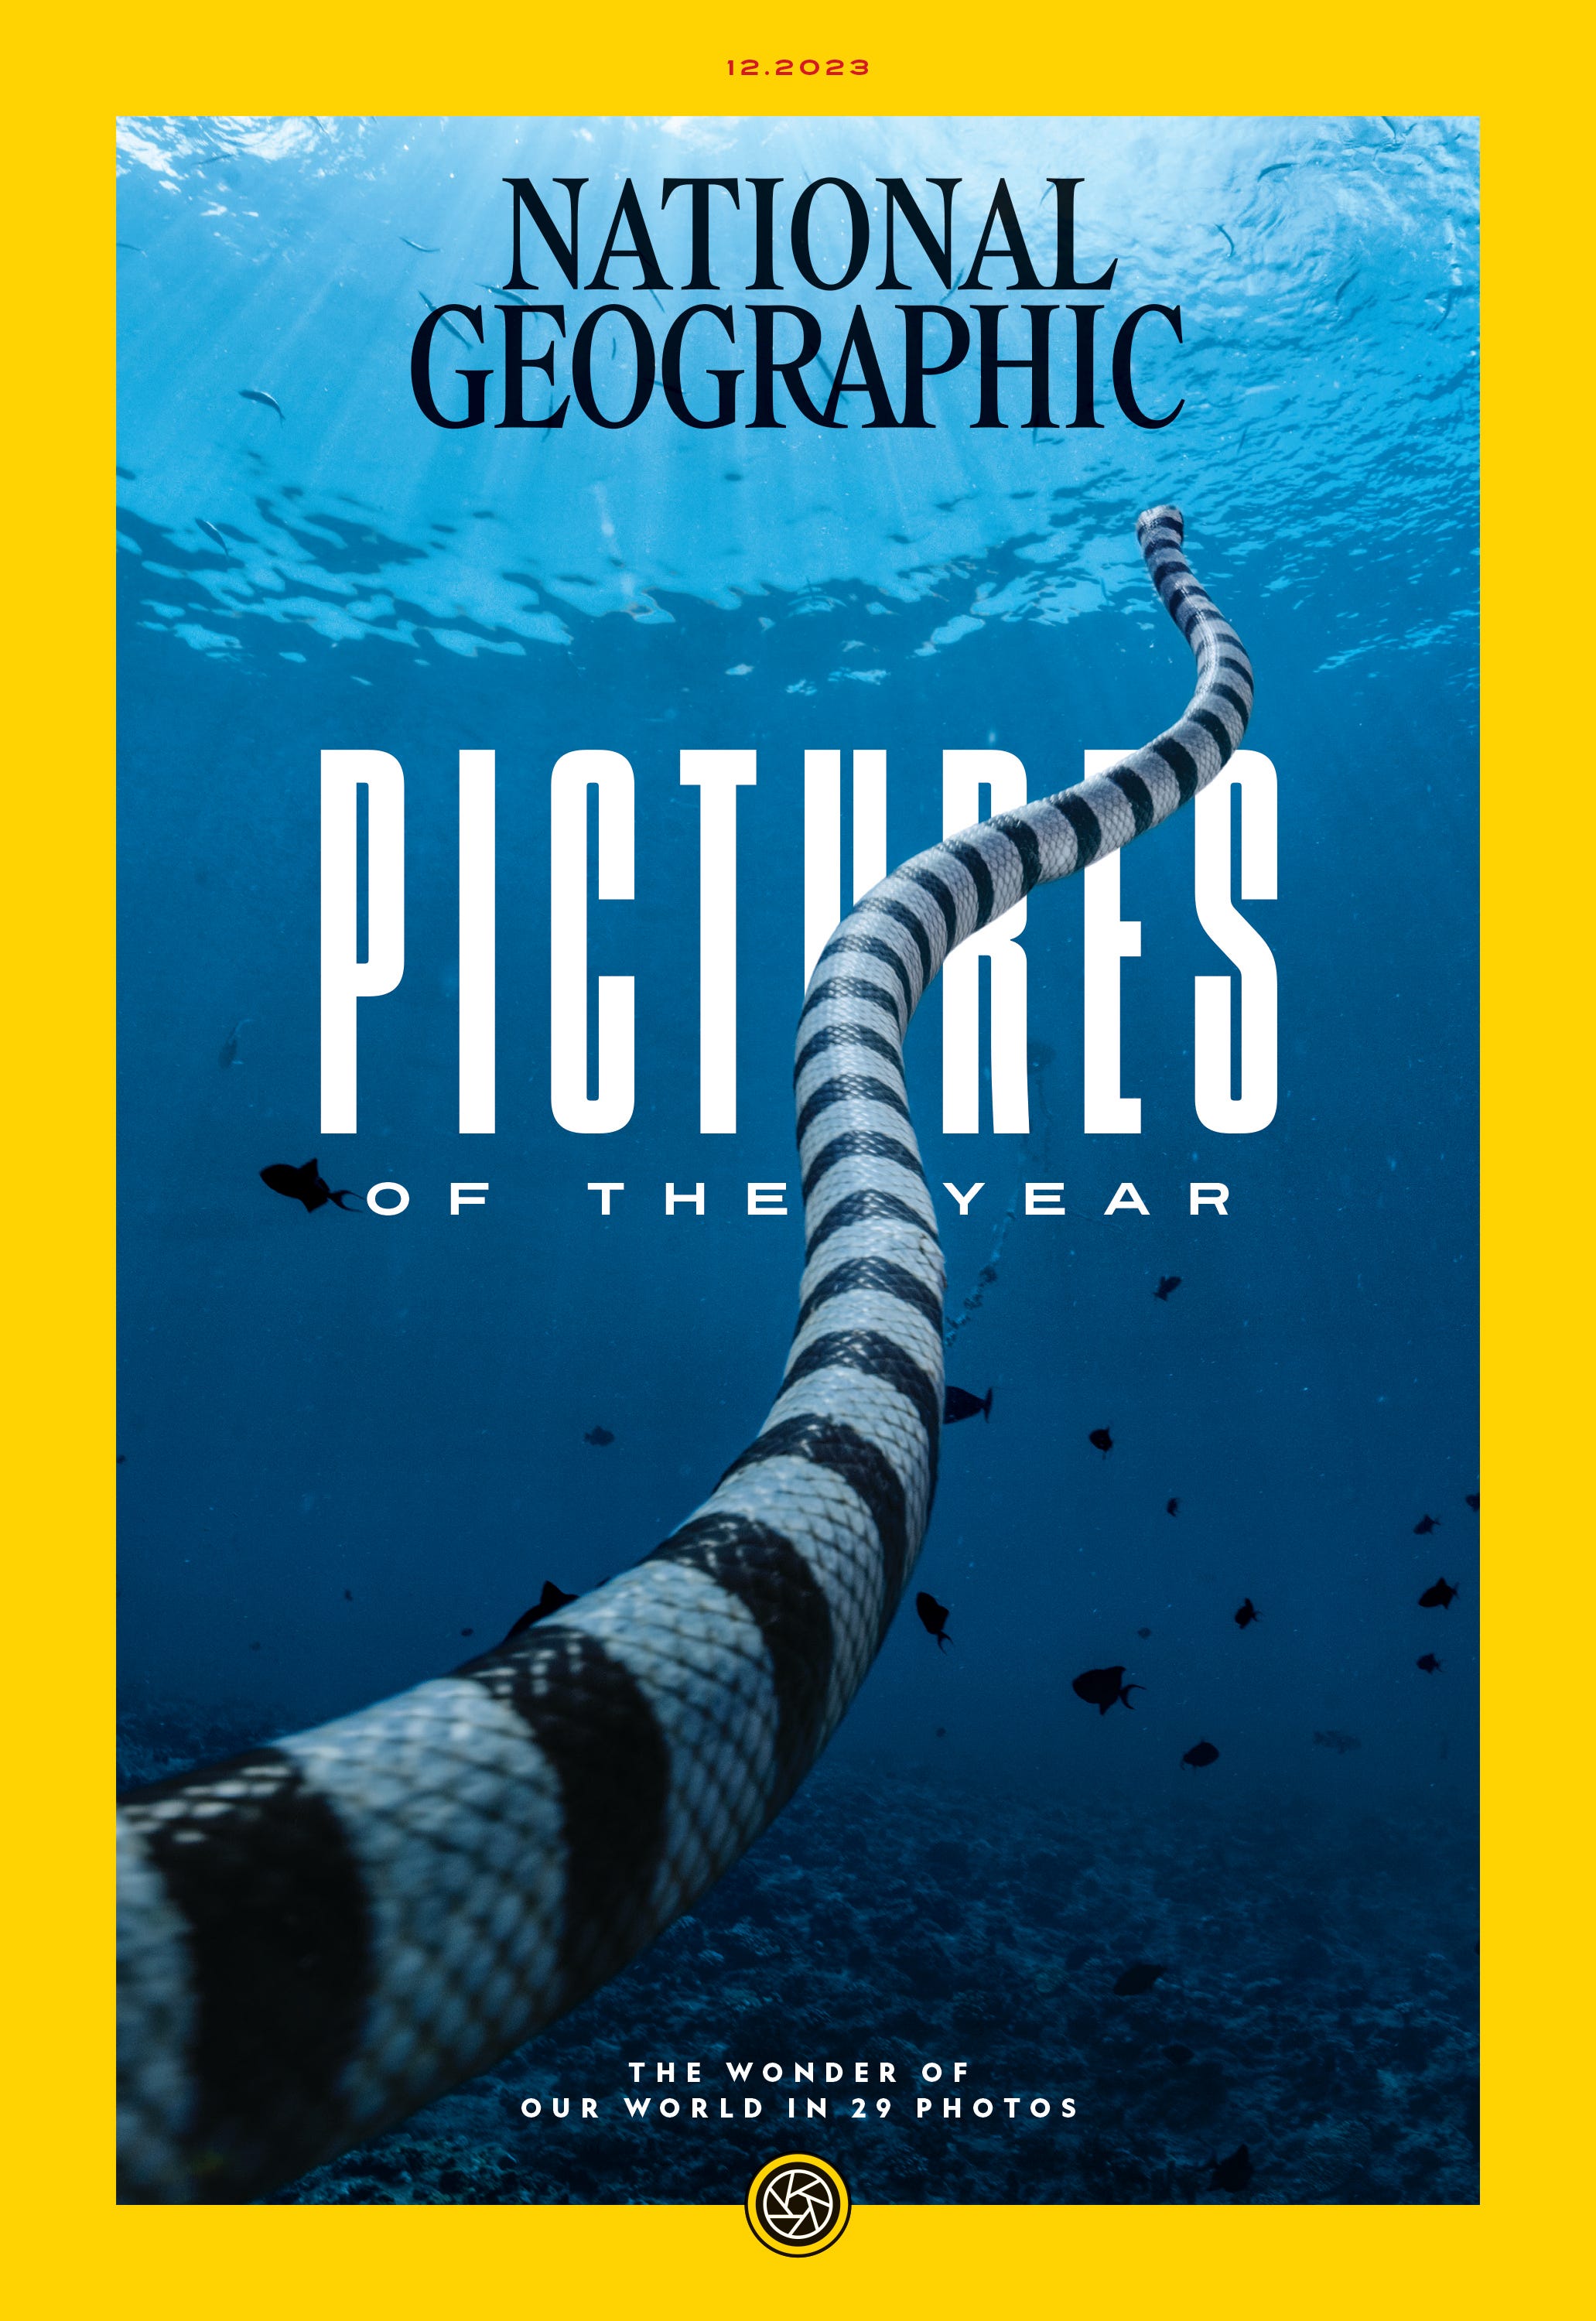 Cover von National Geographic vom Dezember 2023.